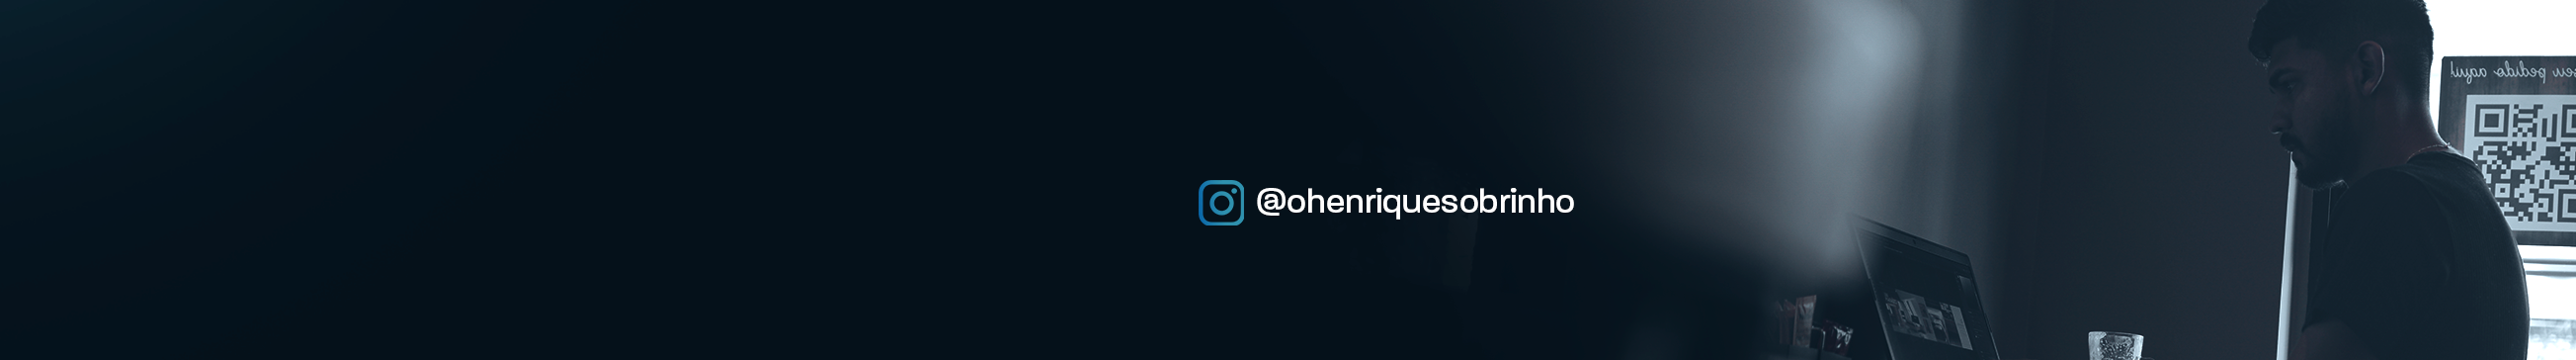 Henrique Sobrinho's profile banner